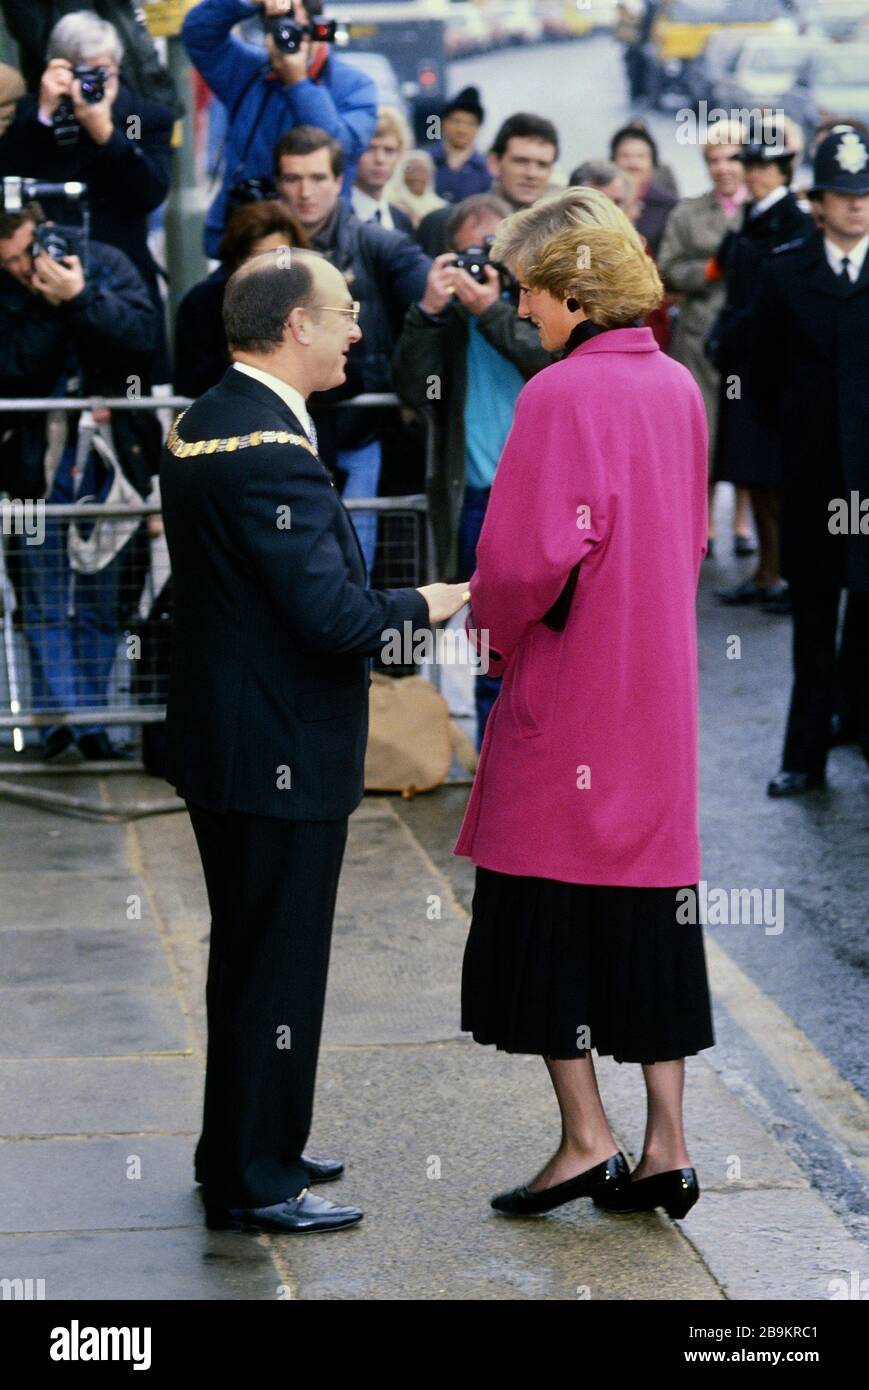 Die Prinzessin von Wales, Prinzessin Diana, besucht das Relate Marriage Guidance Center in Barnett, im Norden Londons, England. November 1988. Stockfoto